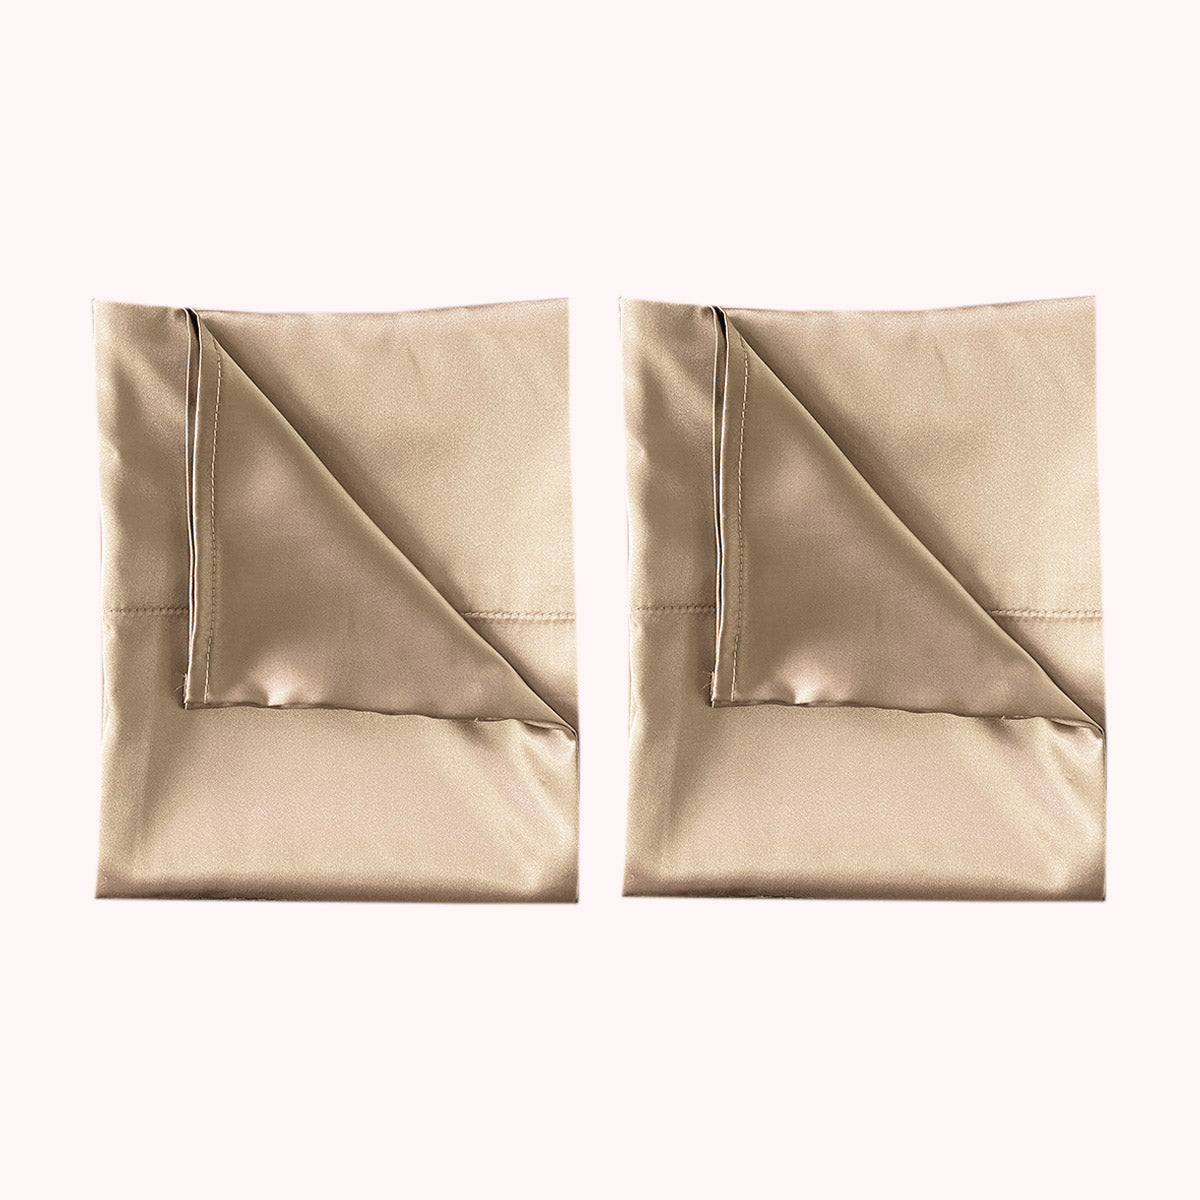 2 folded satin pillowcases in light gold